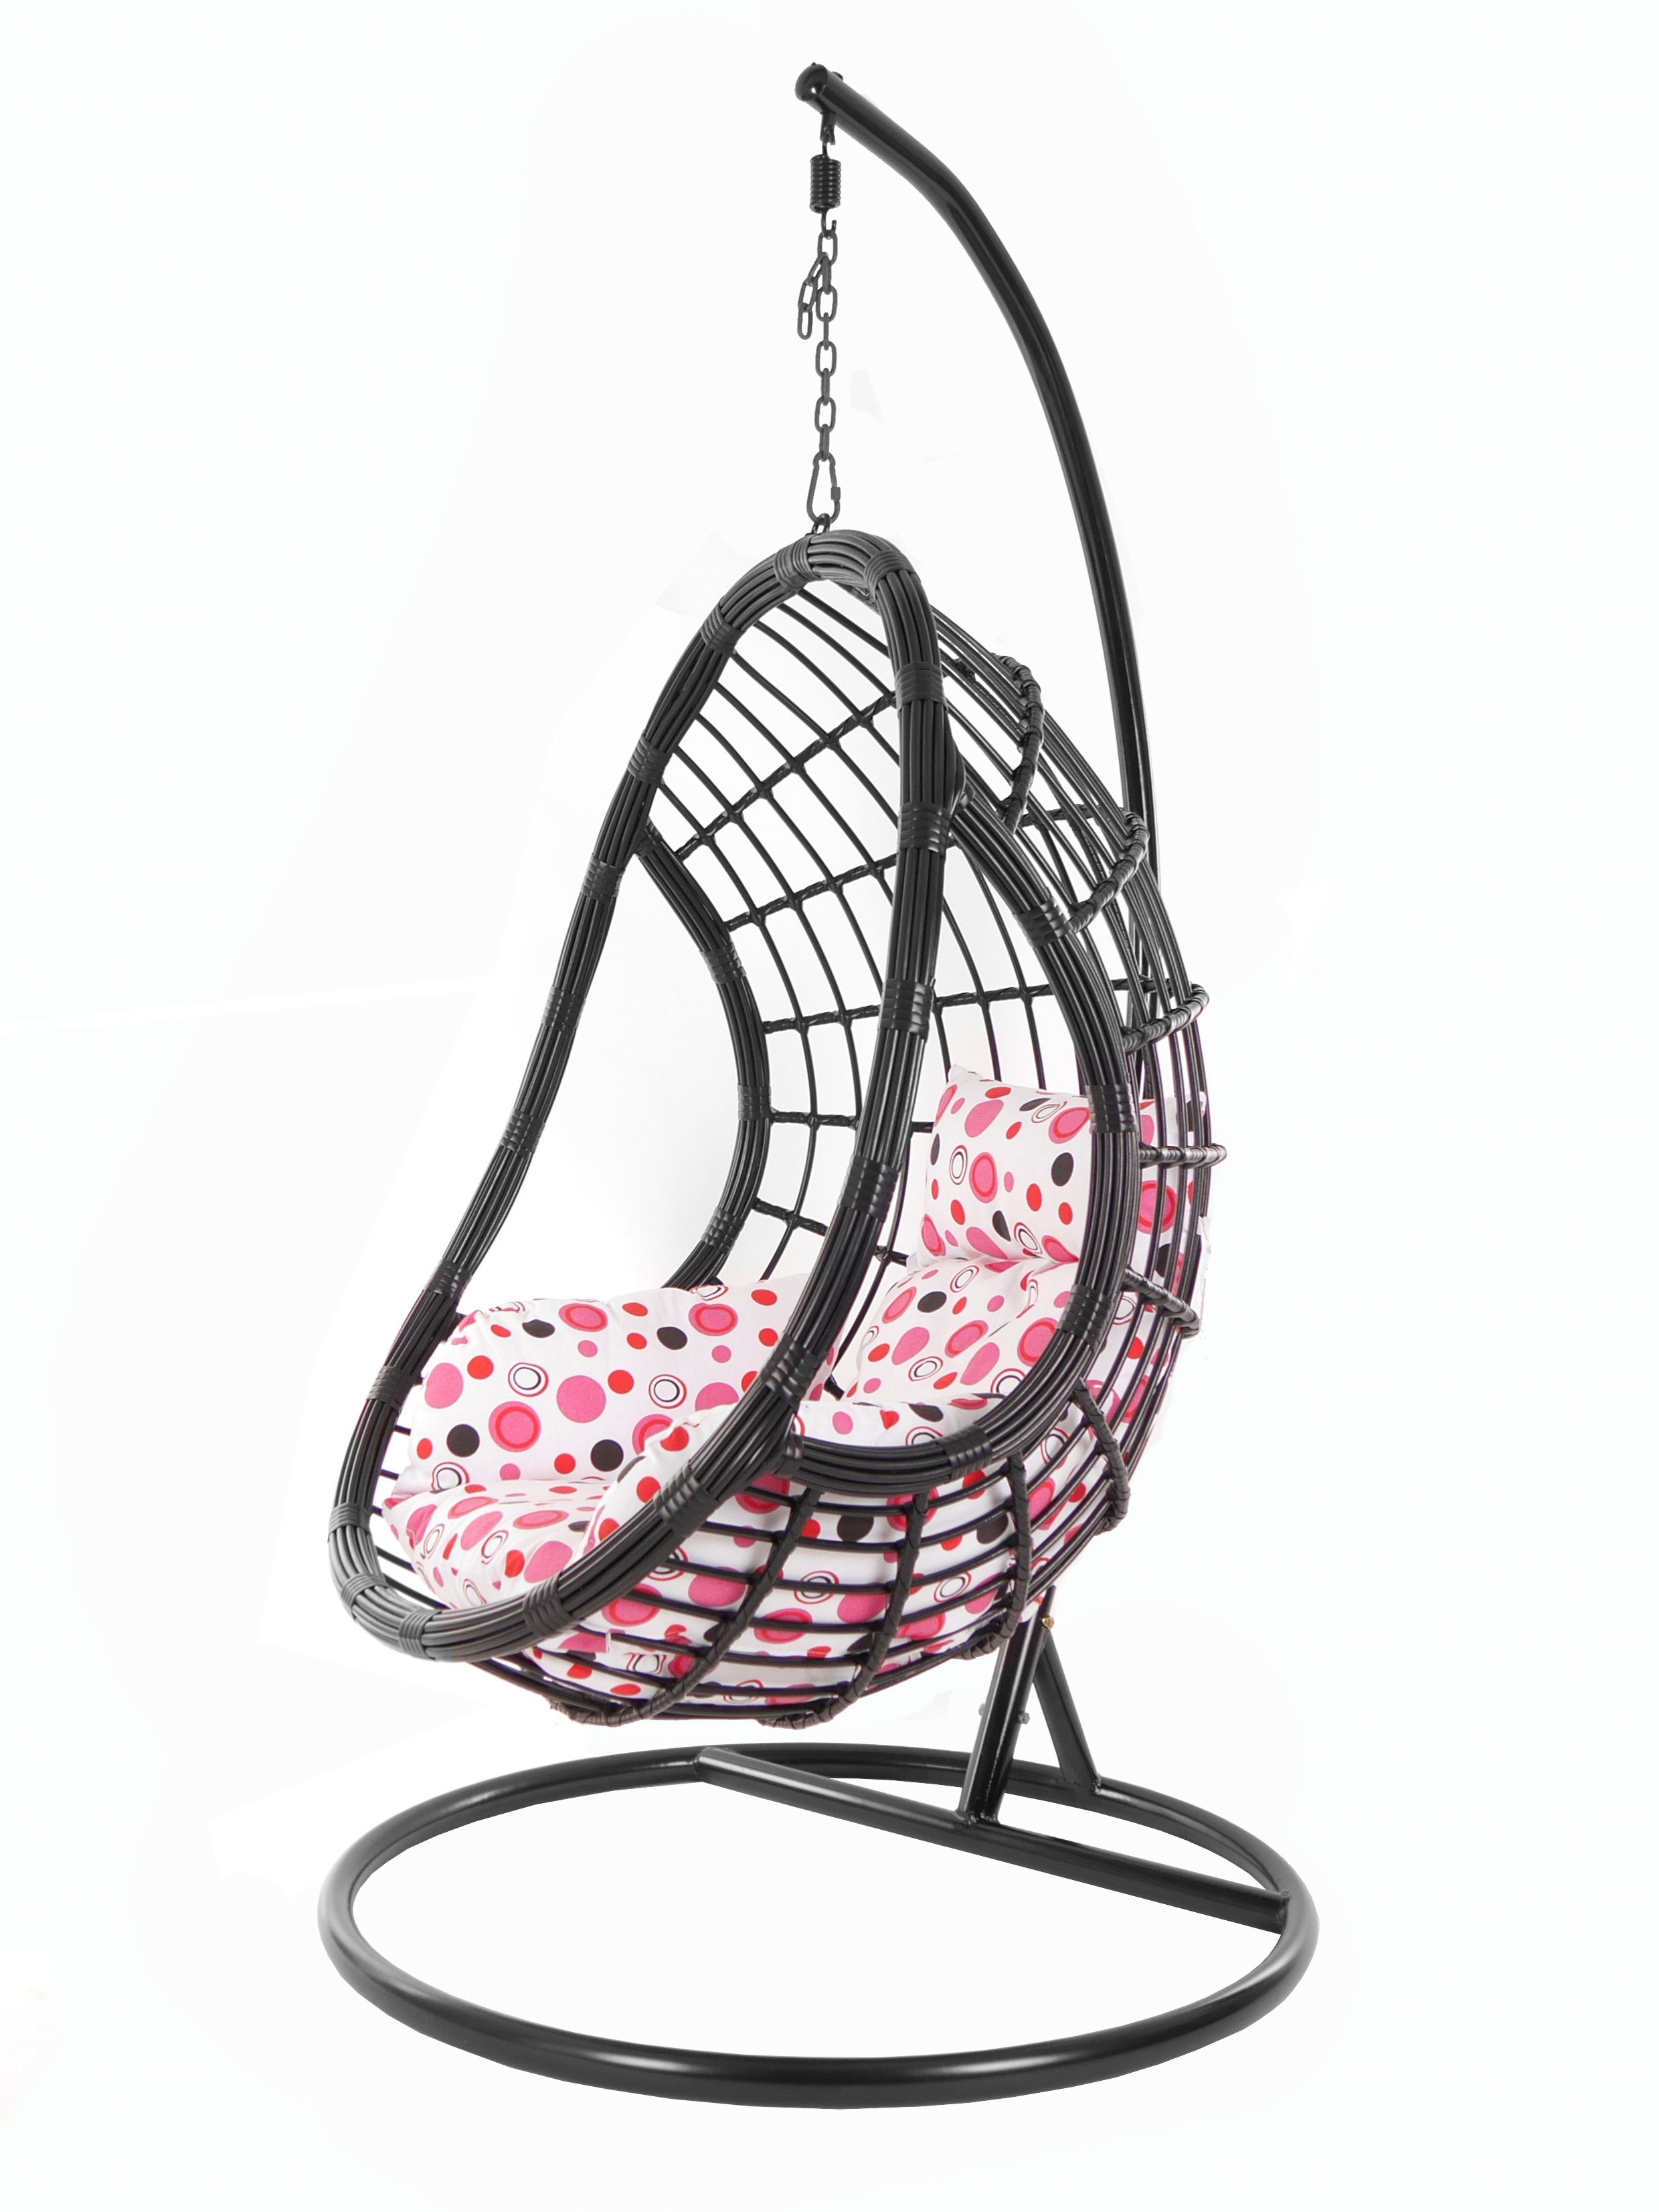 KIDEO Hängesessel PALMANOVA black, Loungemöbel, Swing Chair, Schwarz, Hängesessel mit Gestell und Kissen, Schwebesessel, Muster rosa gepunktet (3039 lemonade dot)